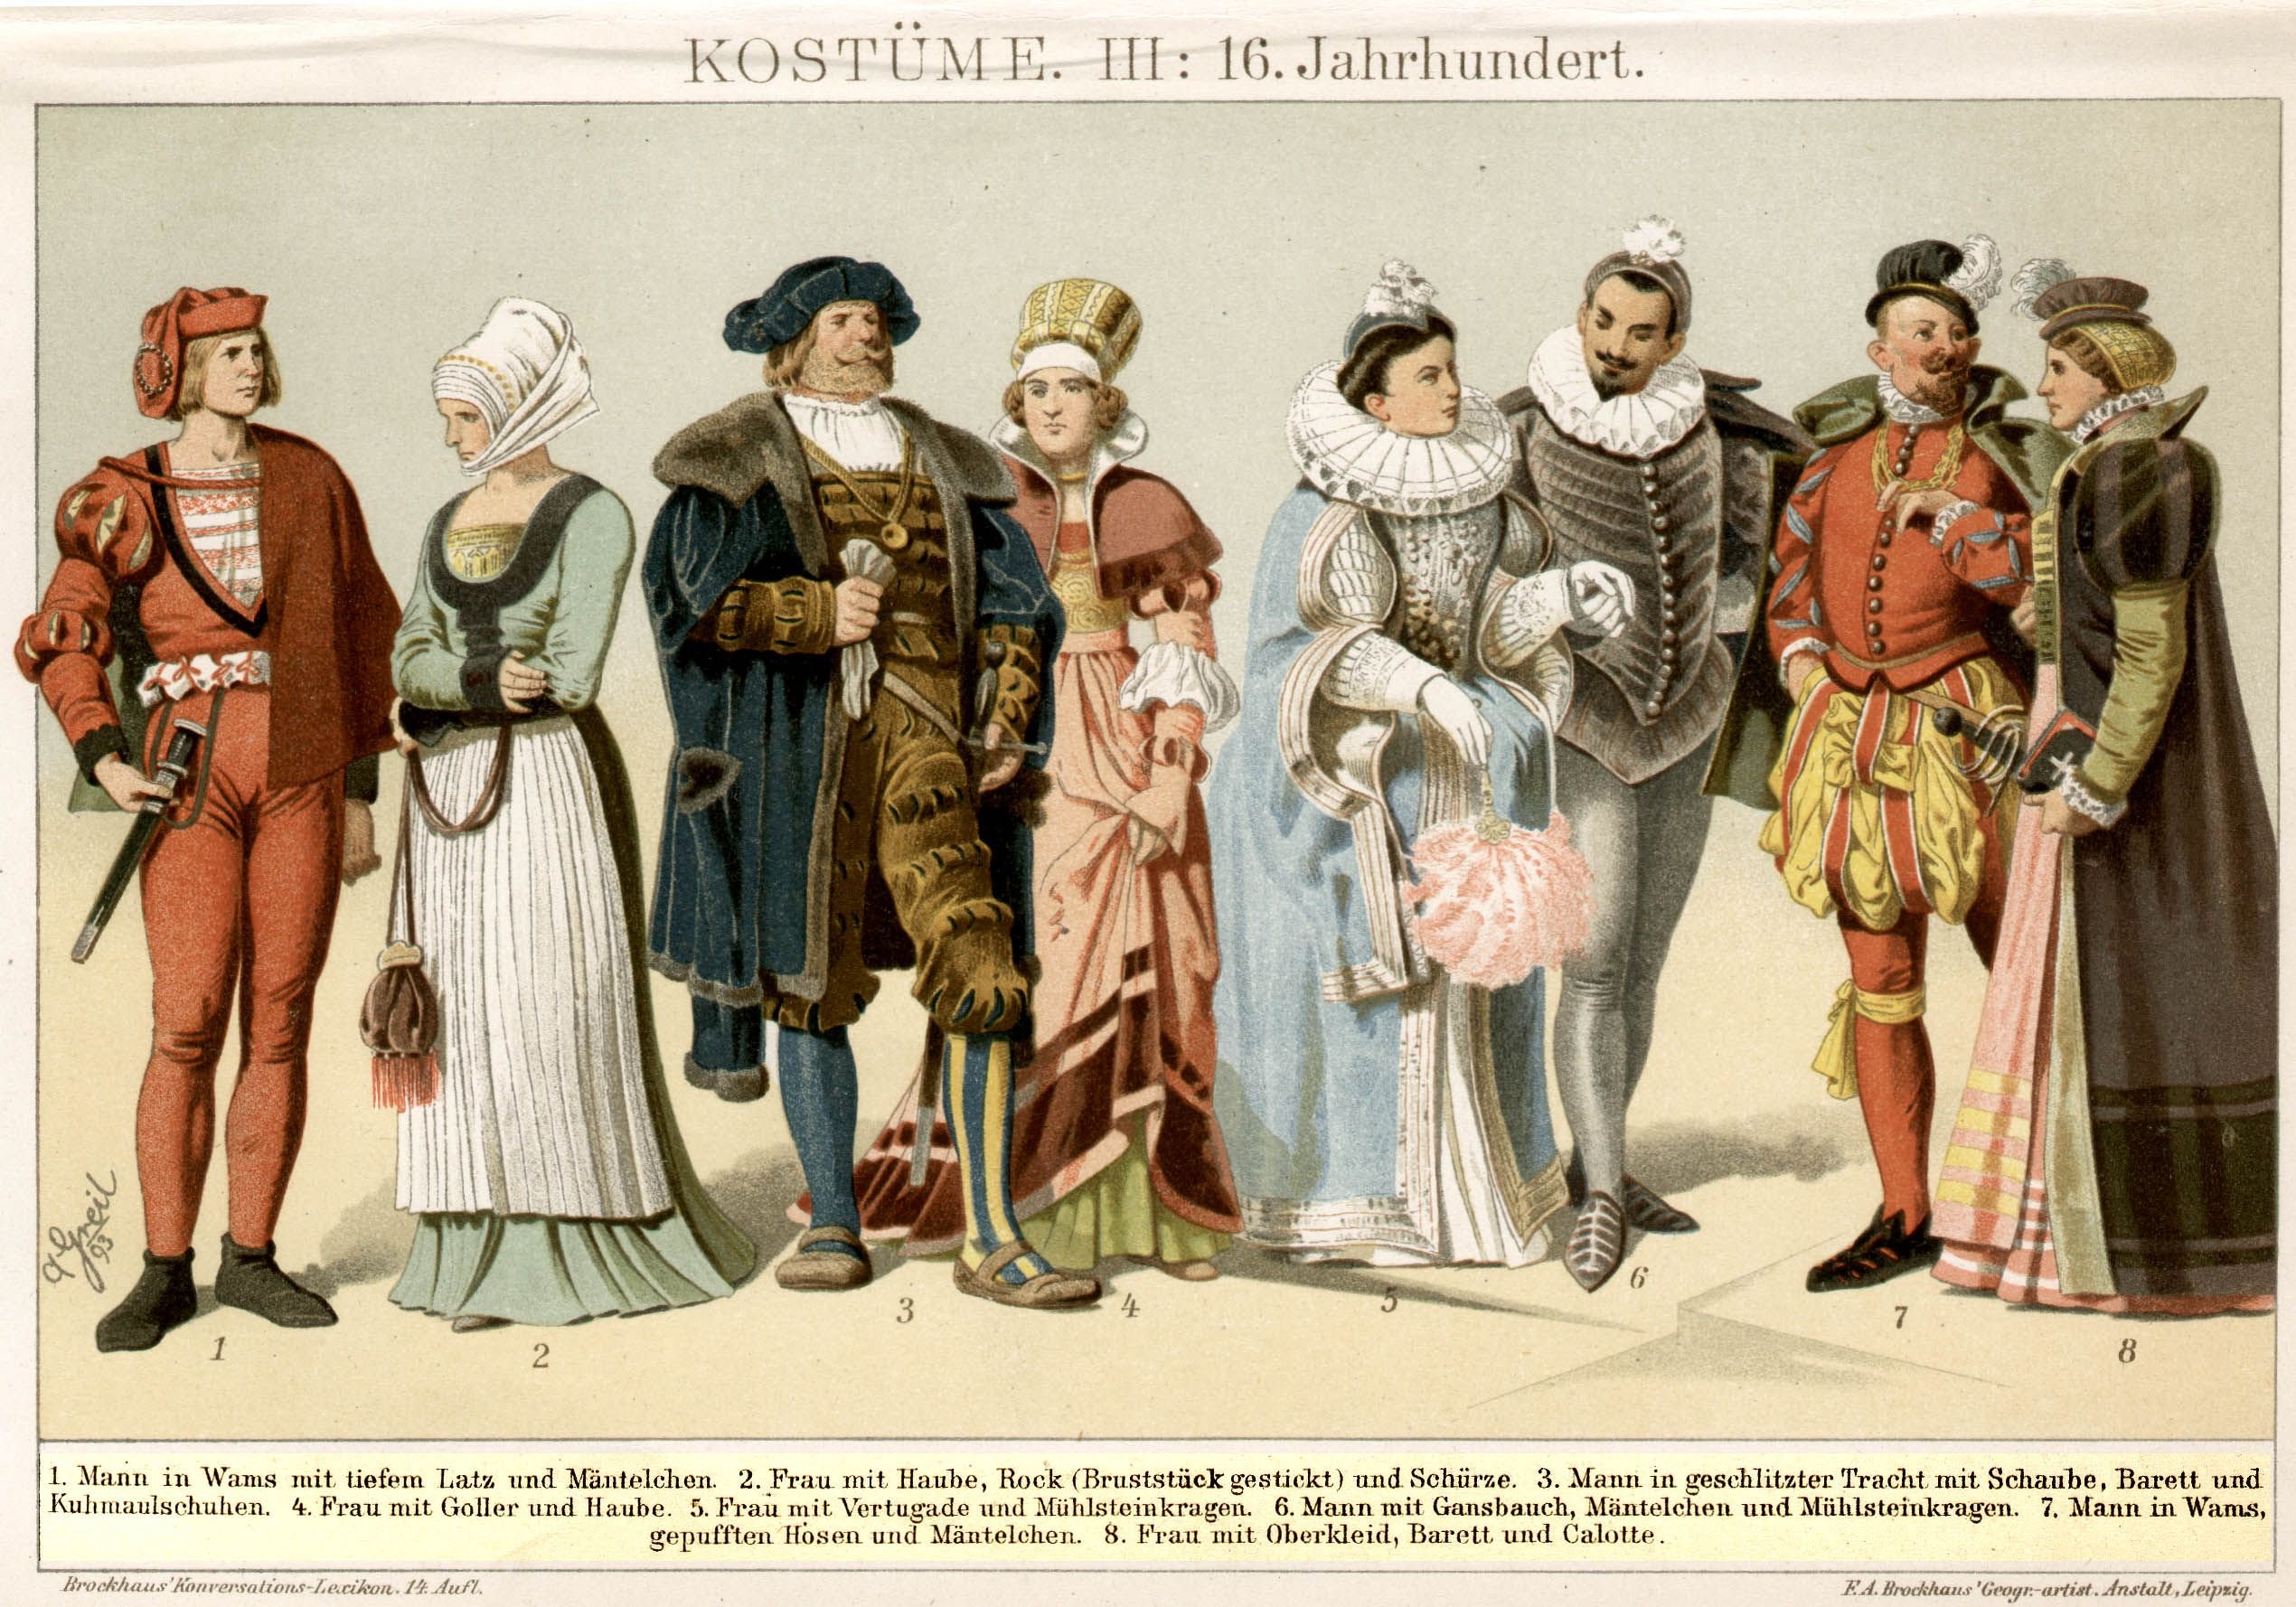 Одежда людей 17 века. Костюм Испании эпохи Возрождения (15-16 века). Мода европейцев в 16-17 веках. Костюм Англии эпохи Возрождения (14-16 века). Одежда богатых людей в Европе 16-17 века.